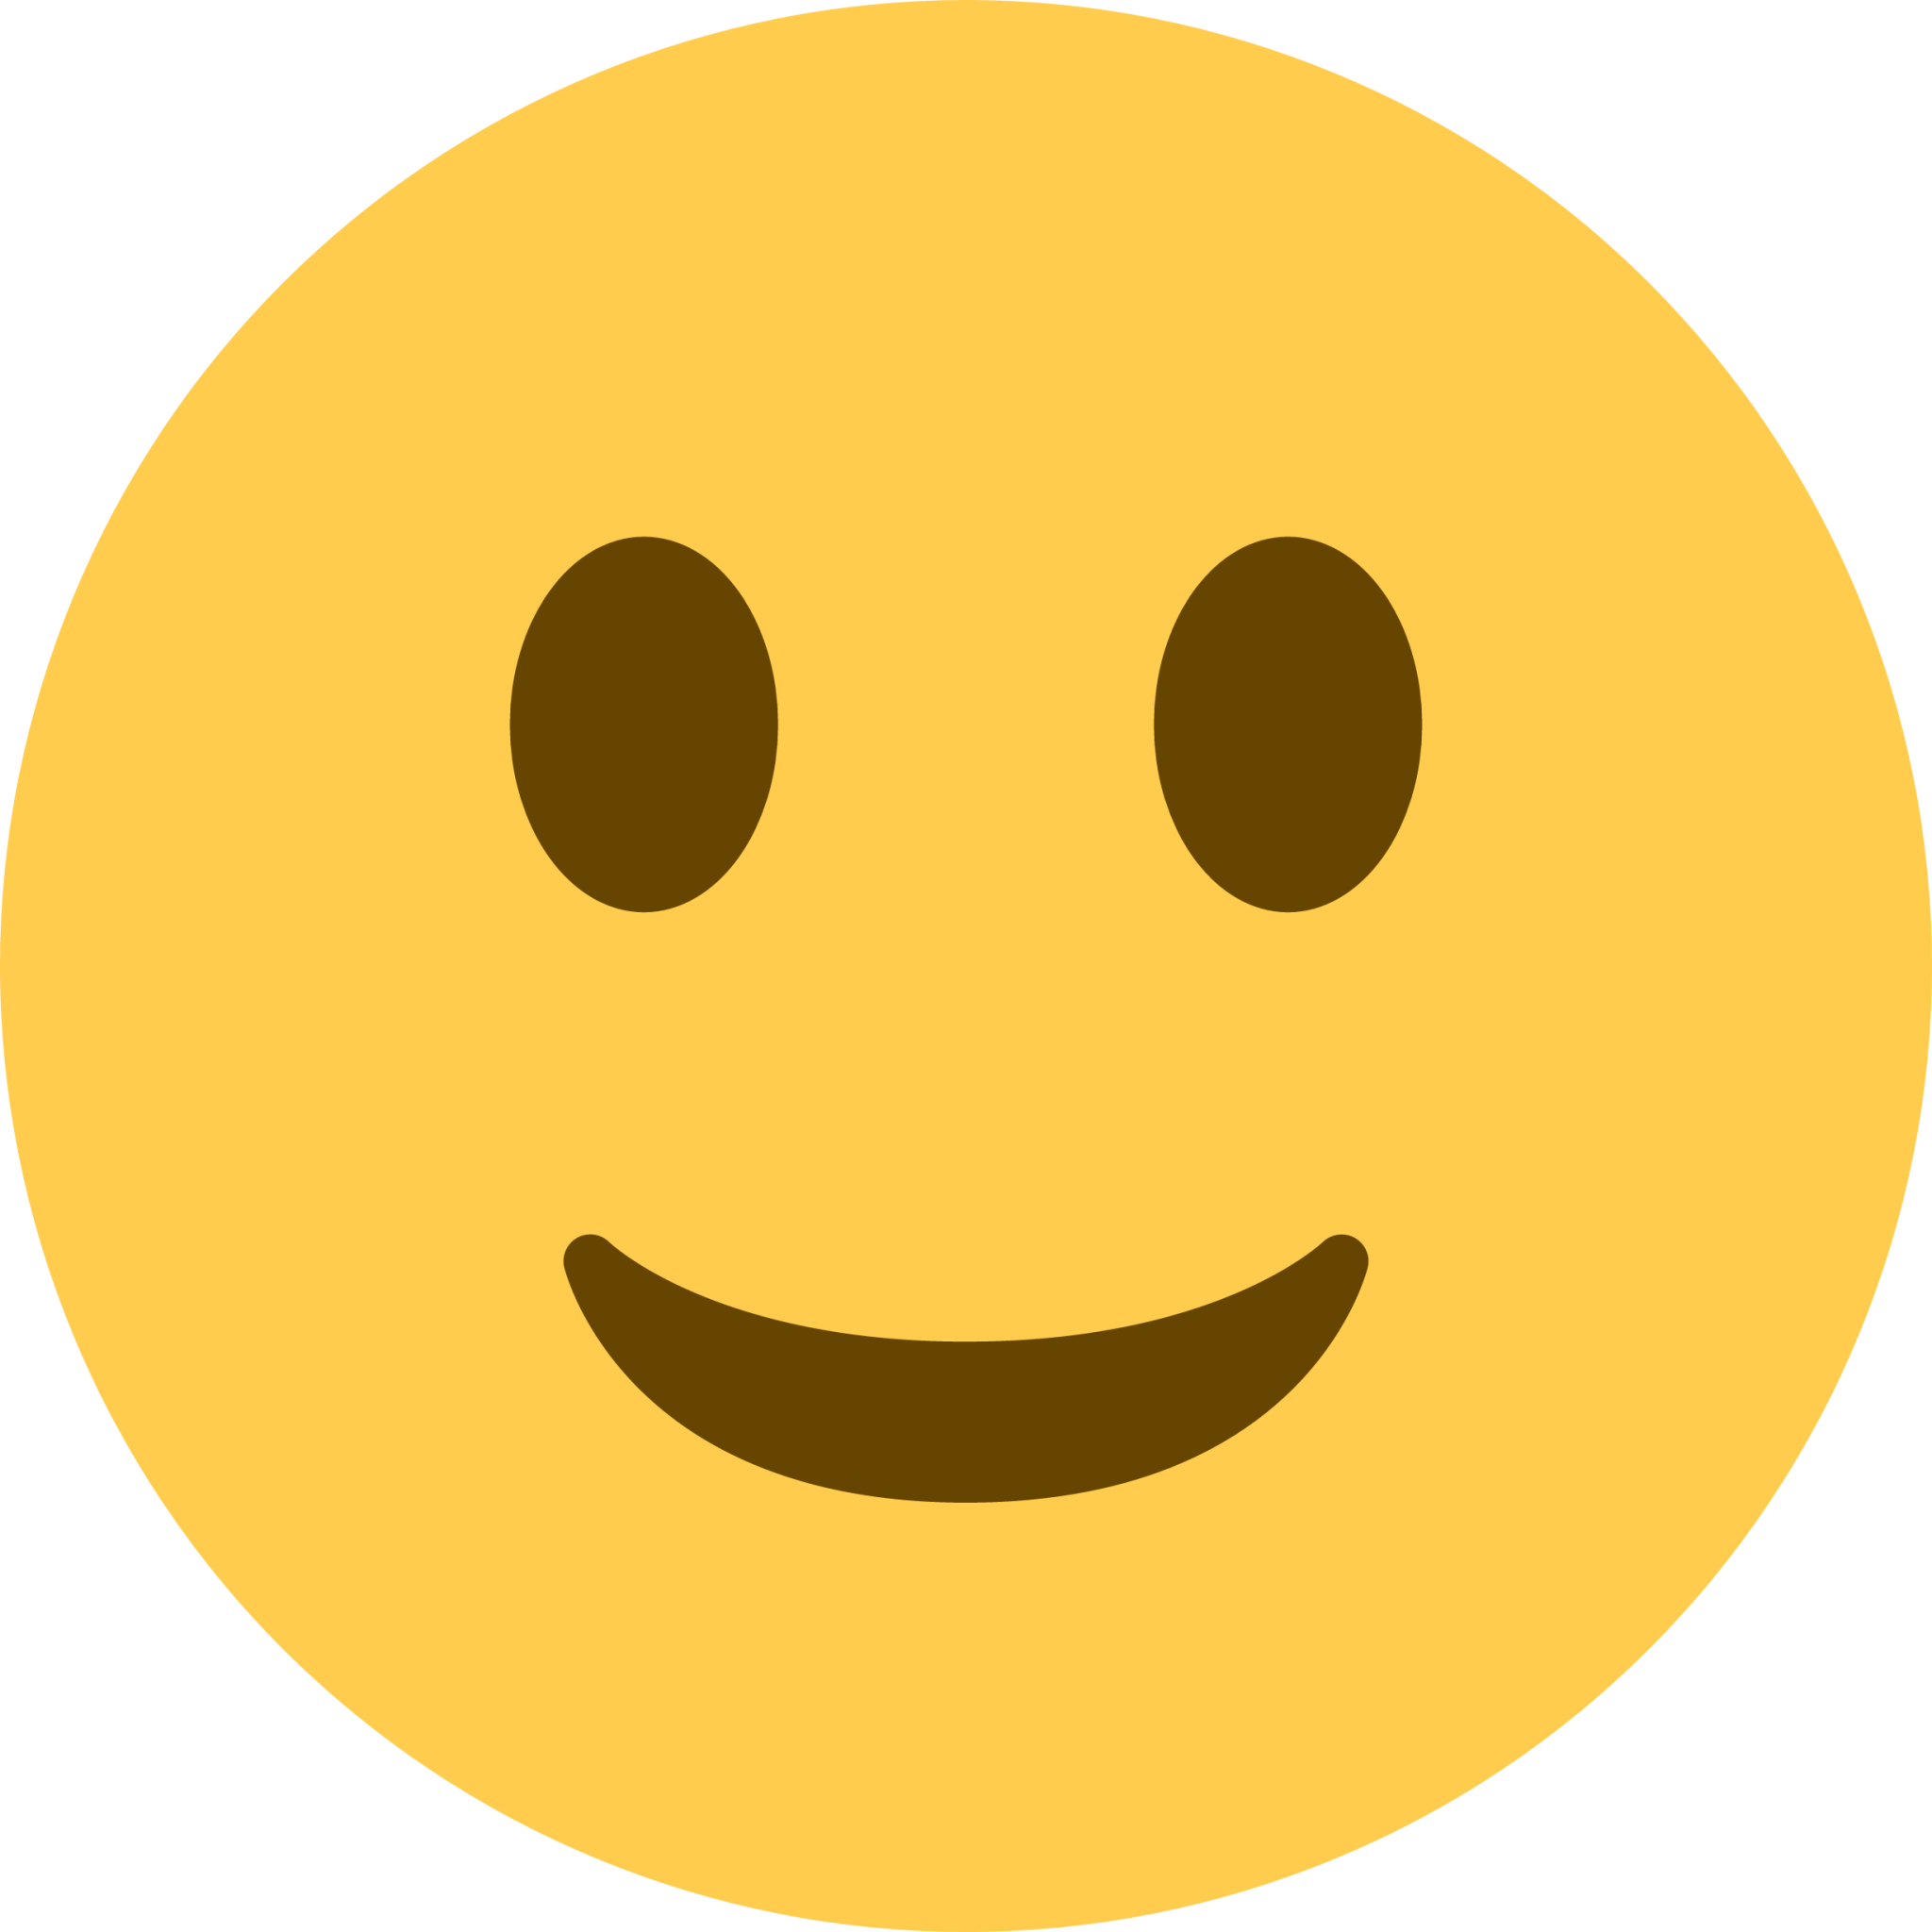 slightly smiling face emoji